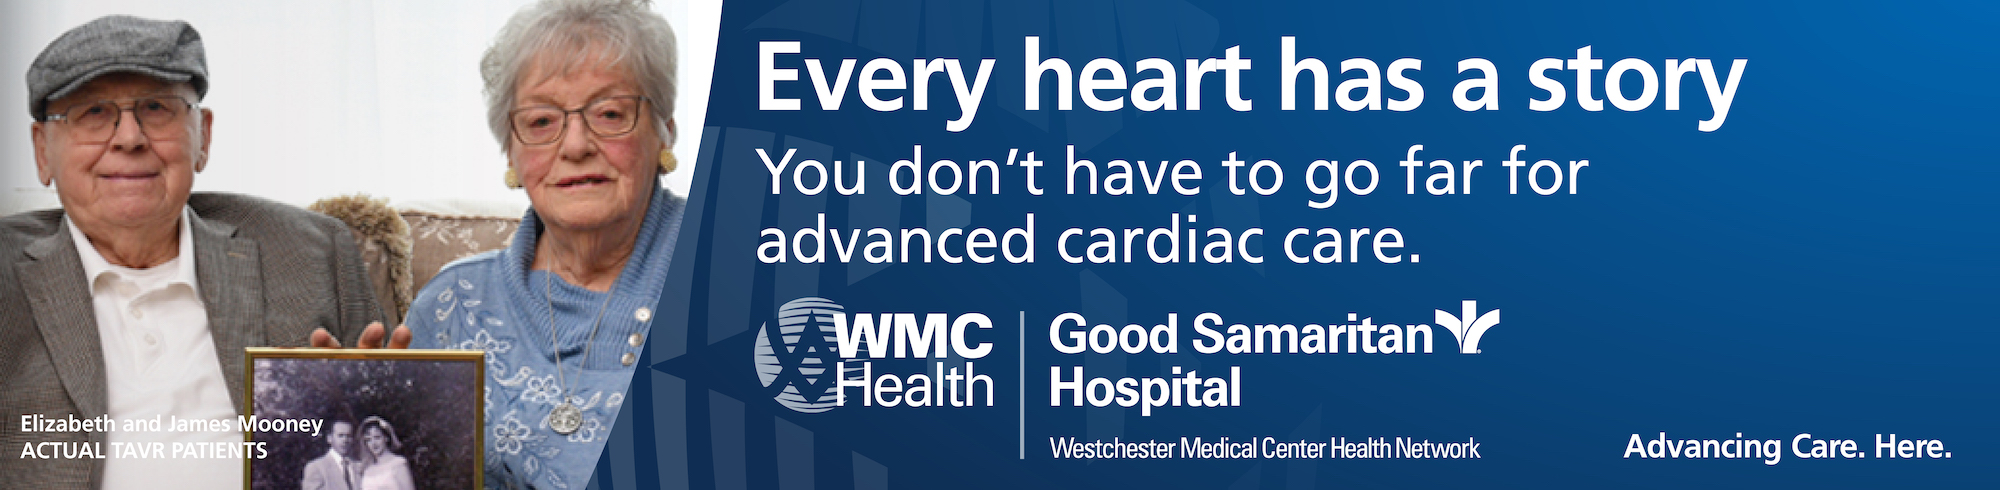 Cardiac Care